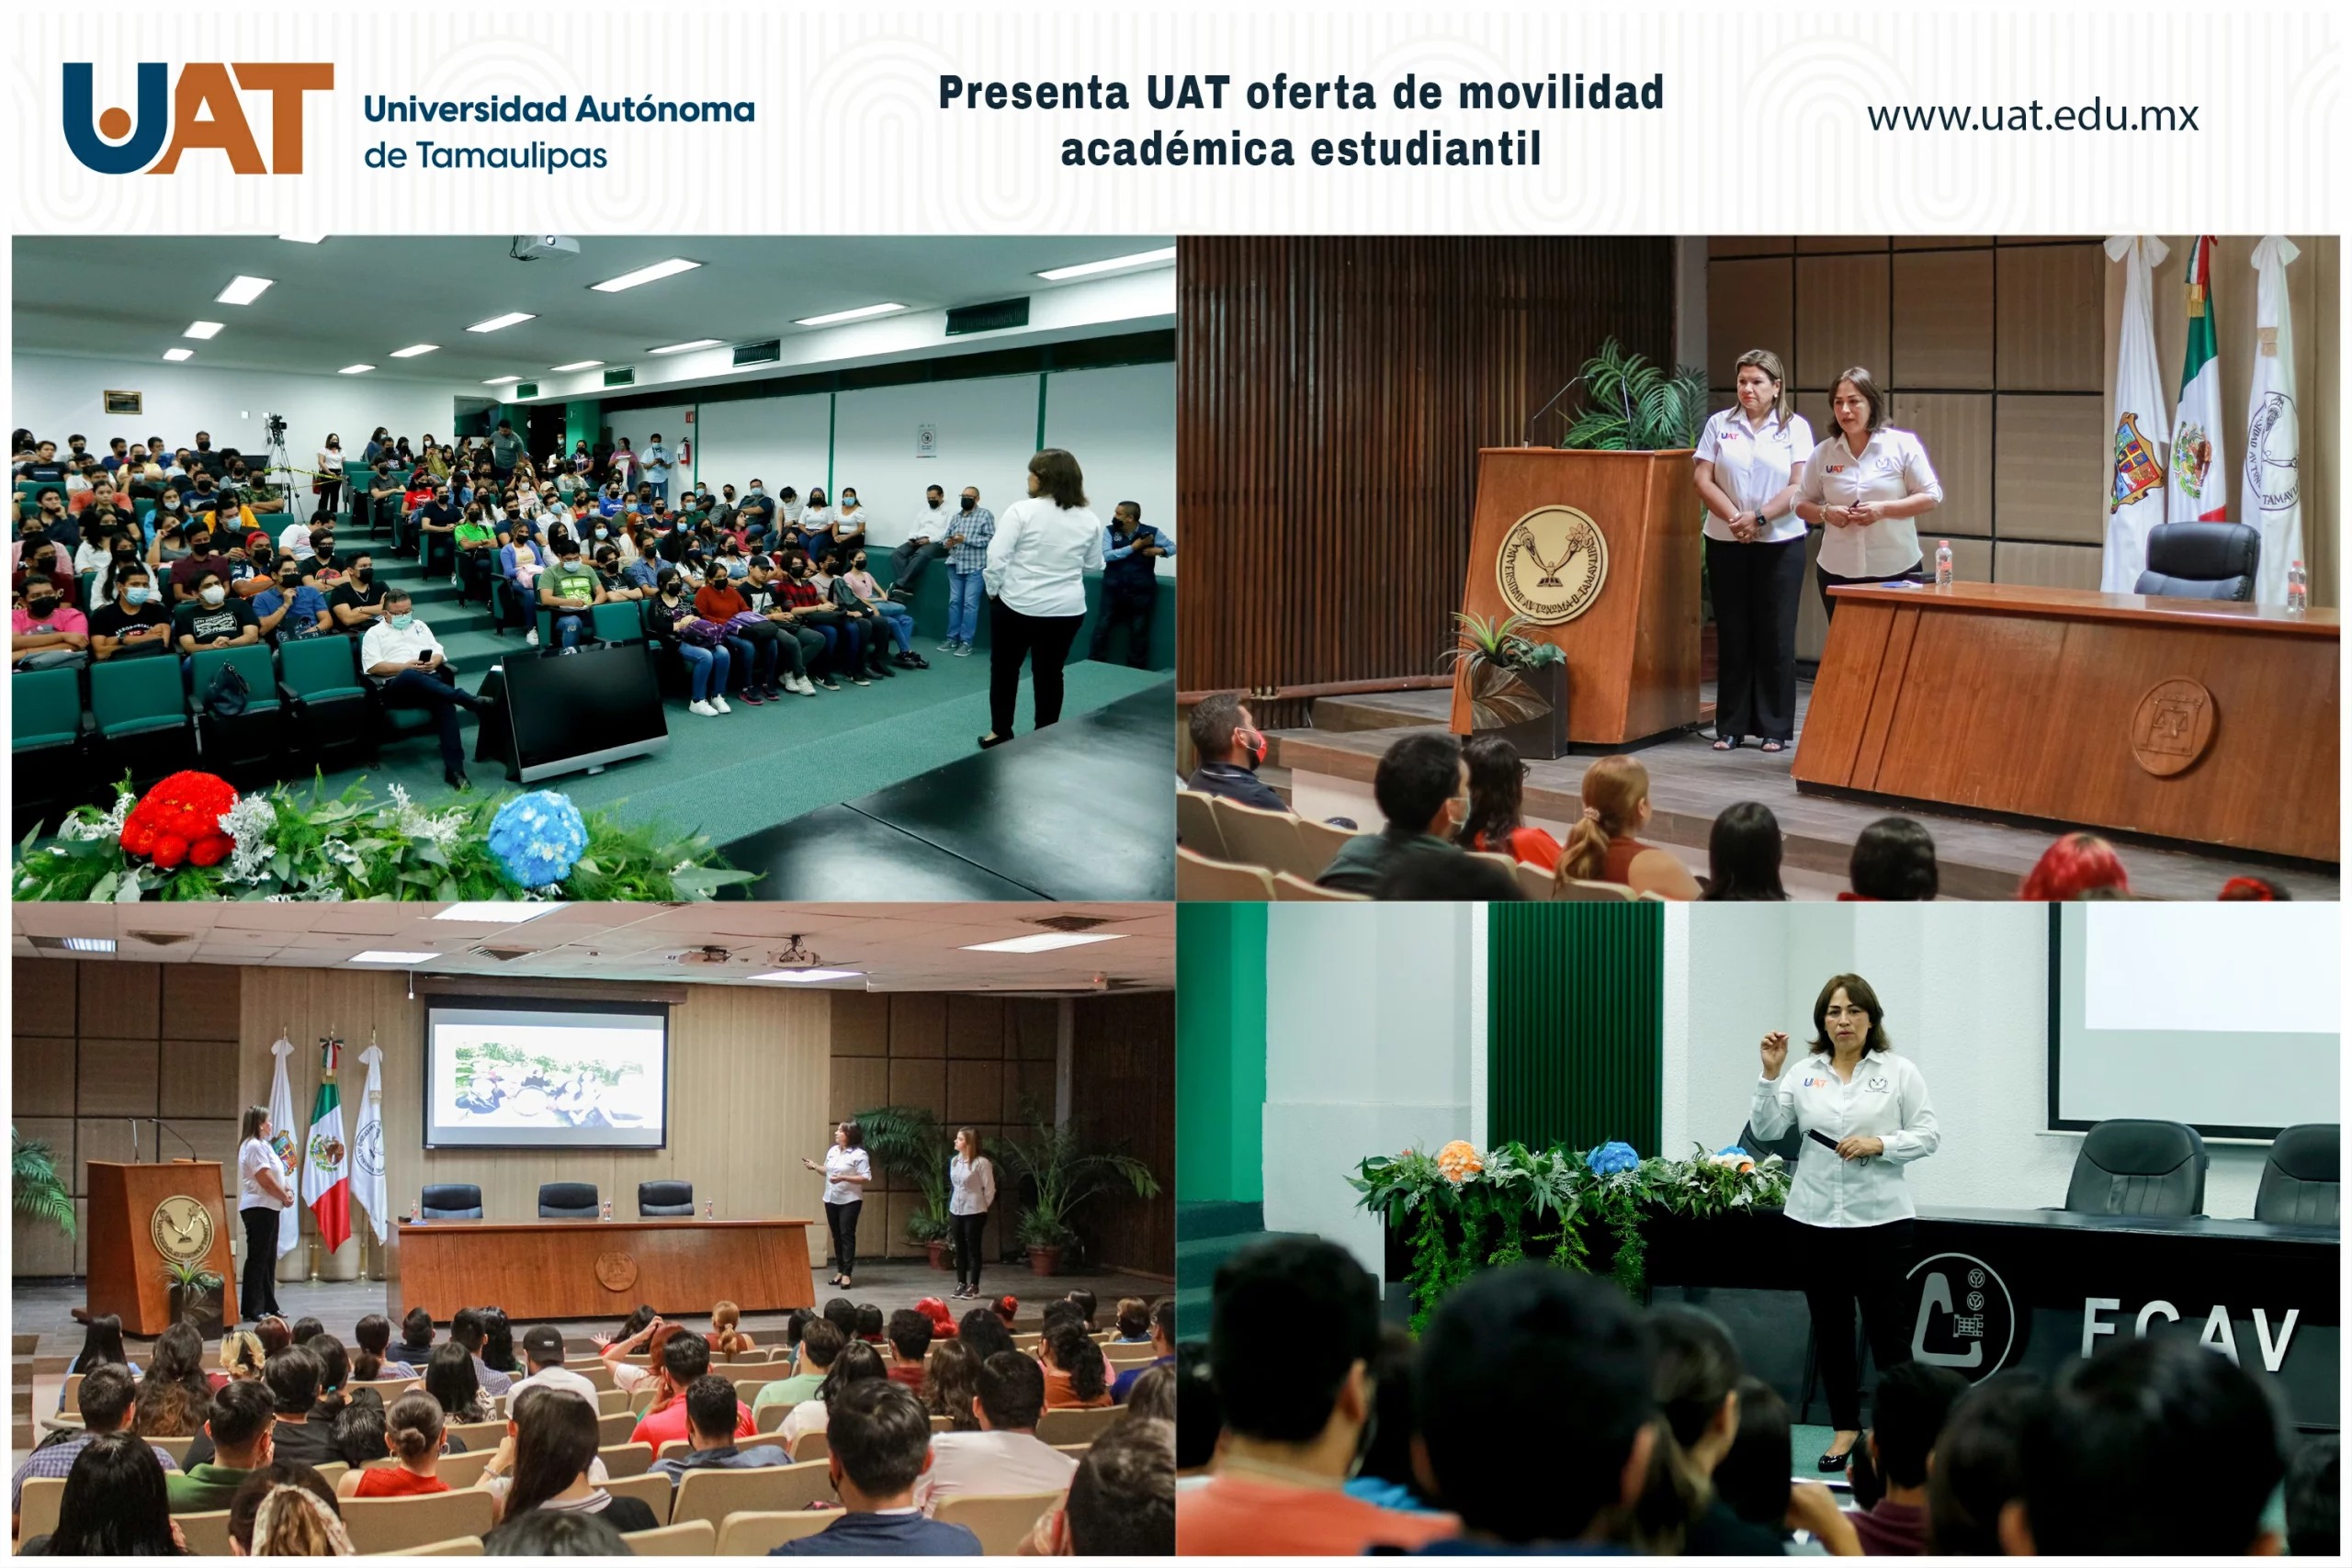 Presenta UAT oferta de convocatorias de movilidad estudiantil